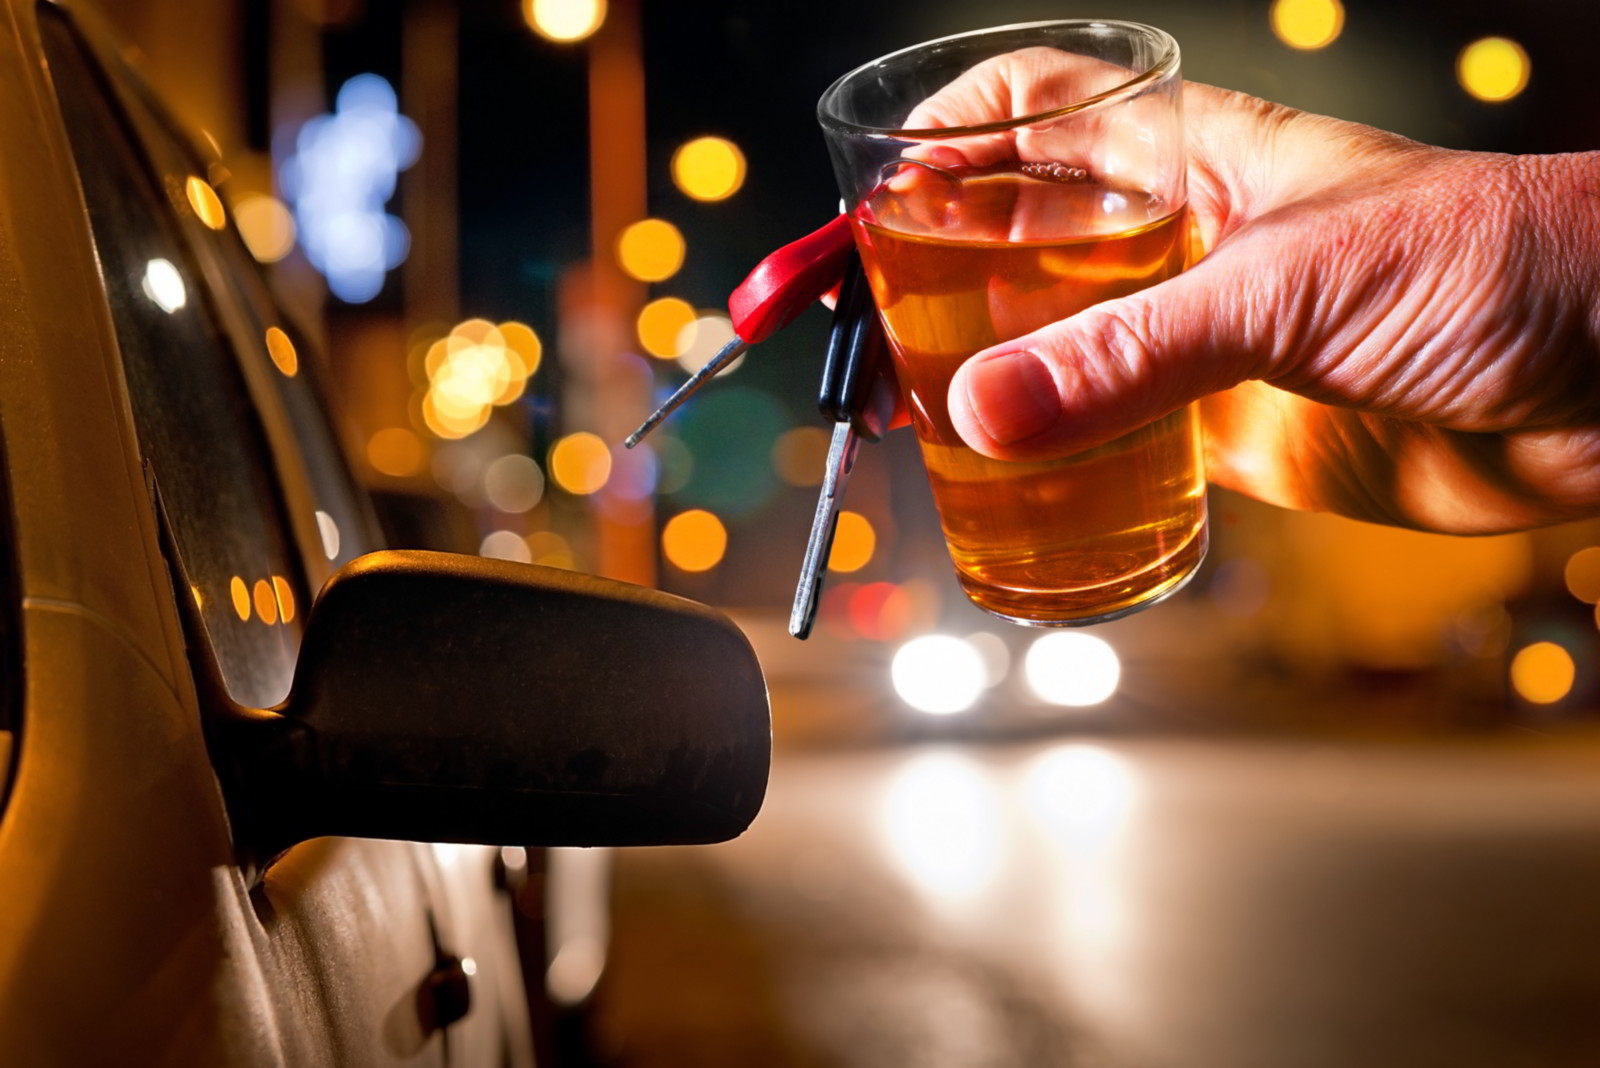 Immagine che mette in guardia sui pericoli dell'alcool durante la guida